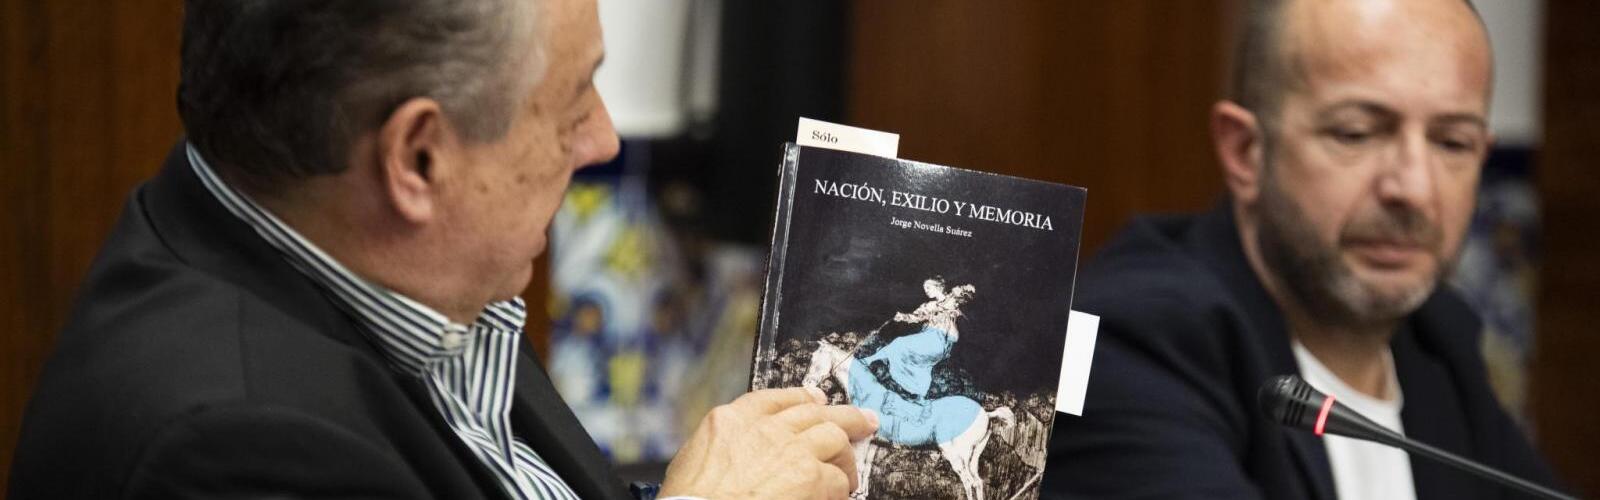 Jorge Novella presenta su libro 'Nación, exilio y memoria'